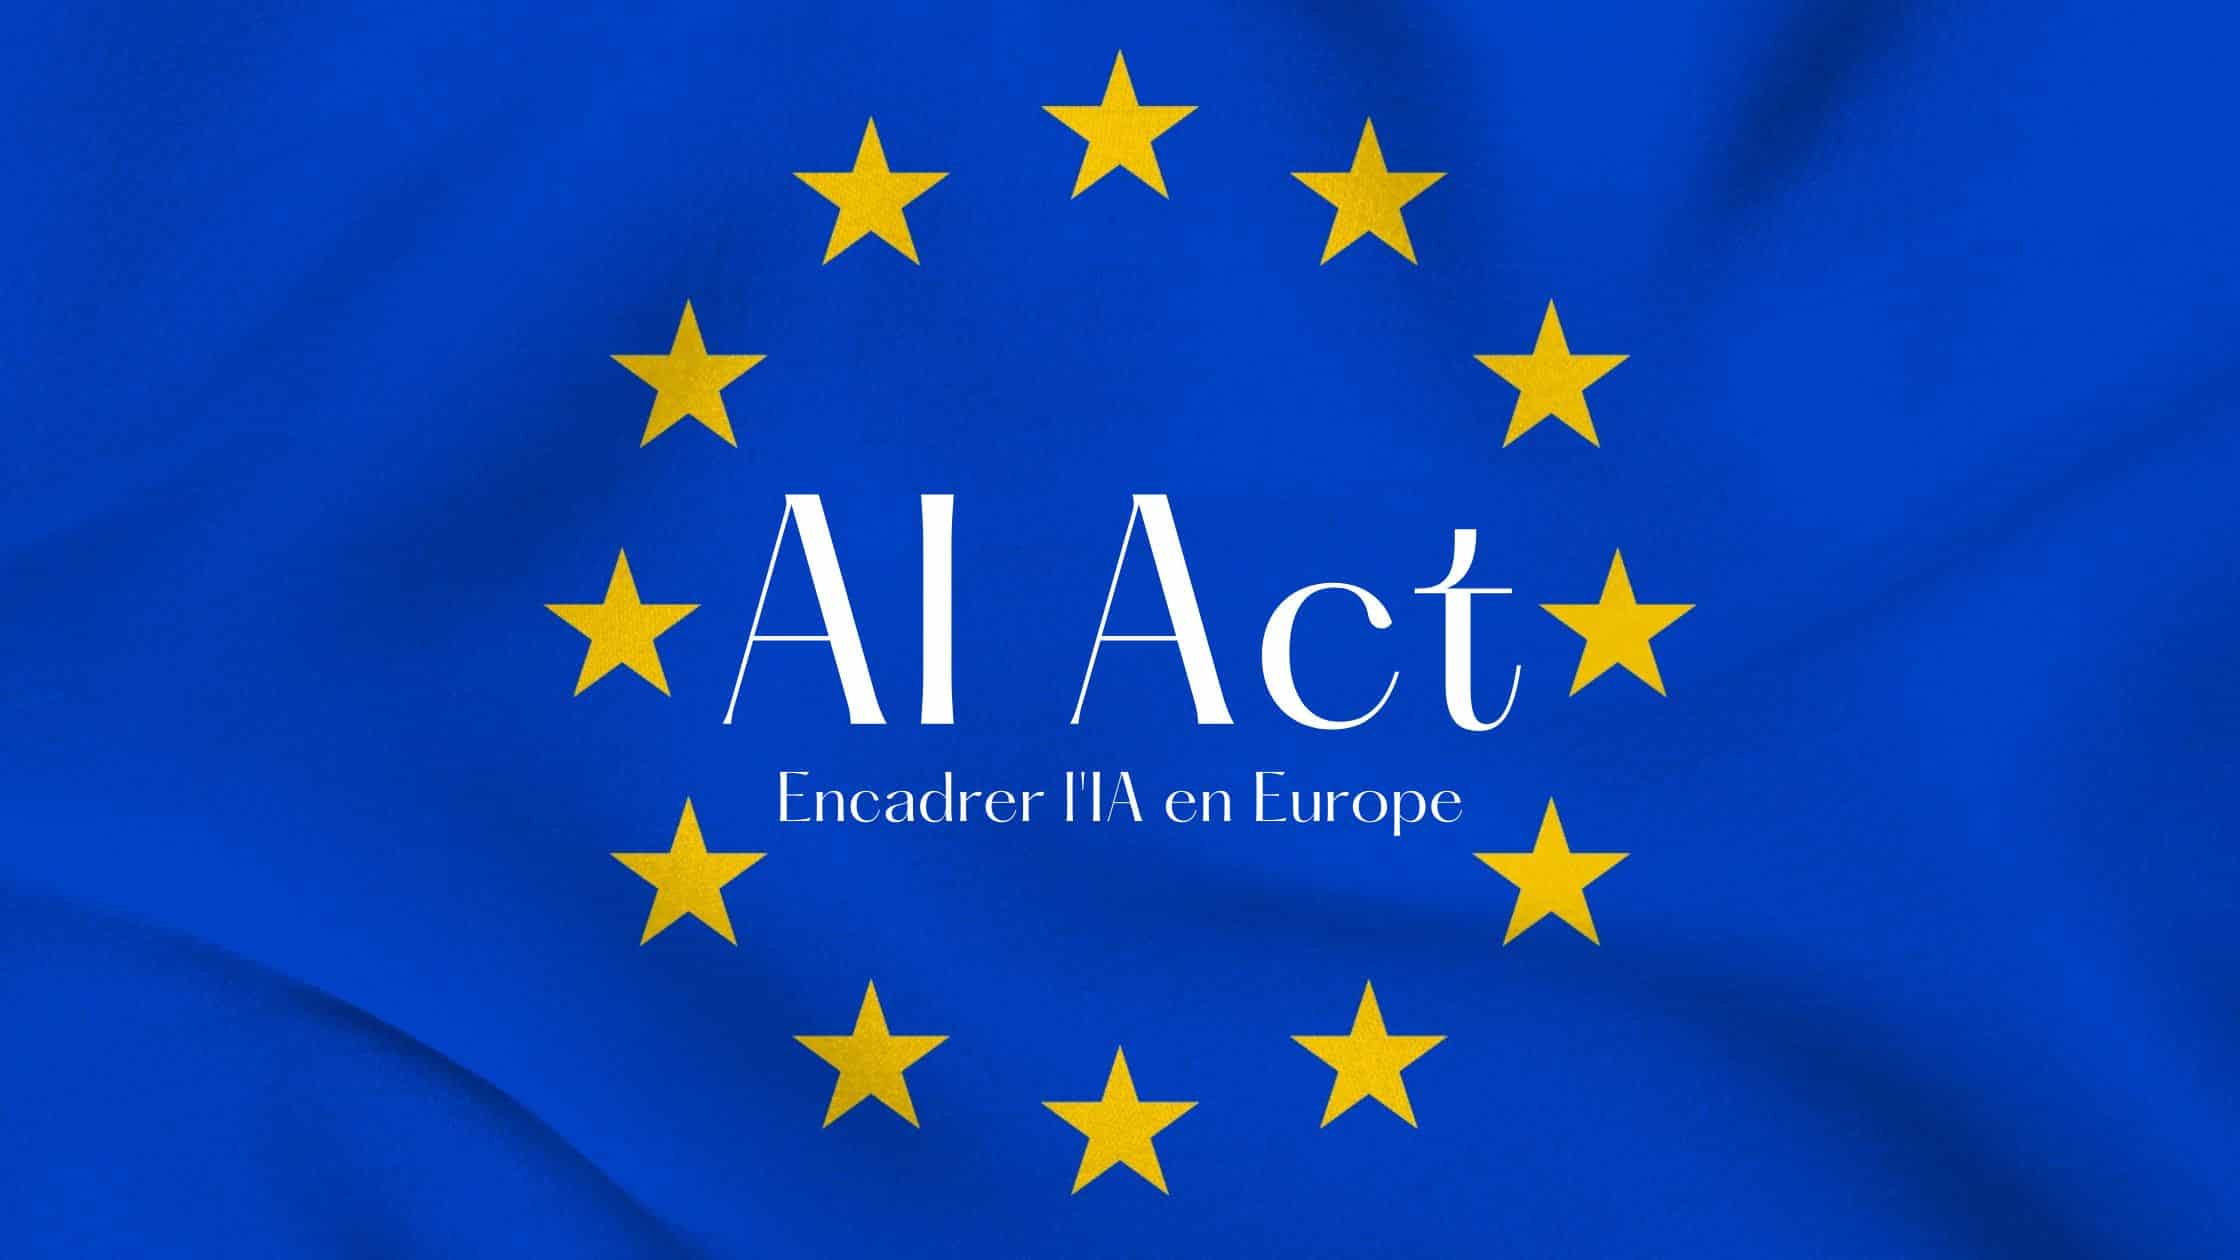 AI Act : Encadrer l’intelligence artificielle en Europe